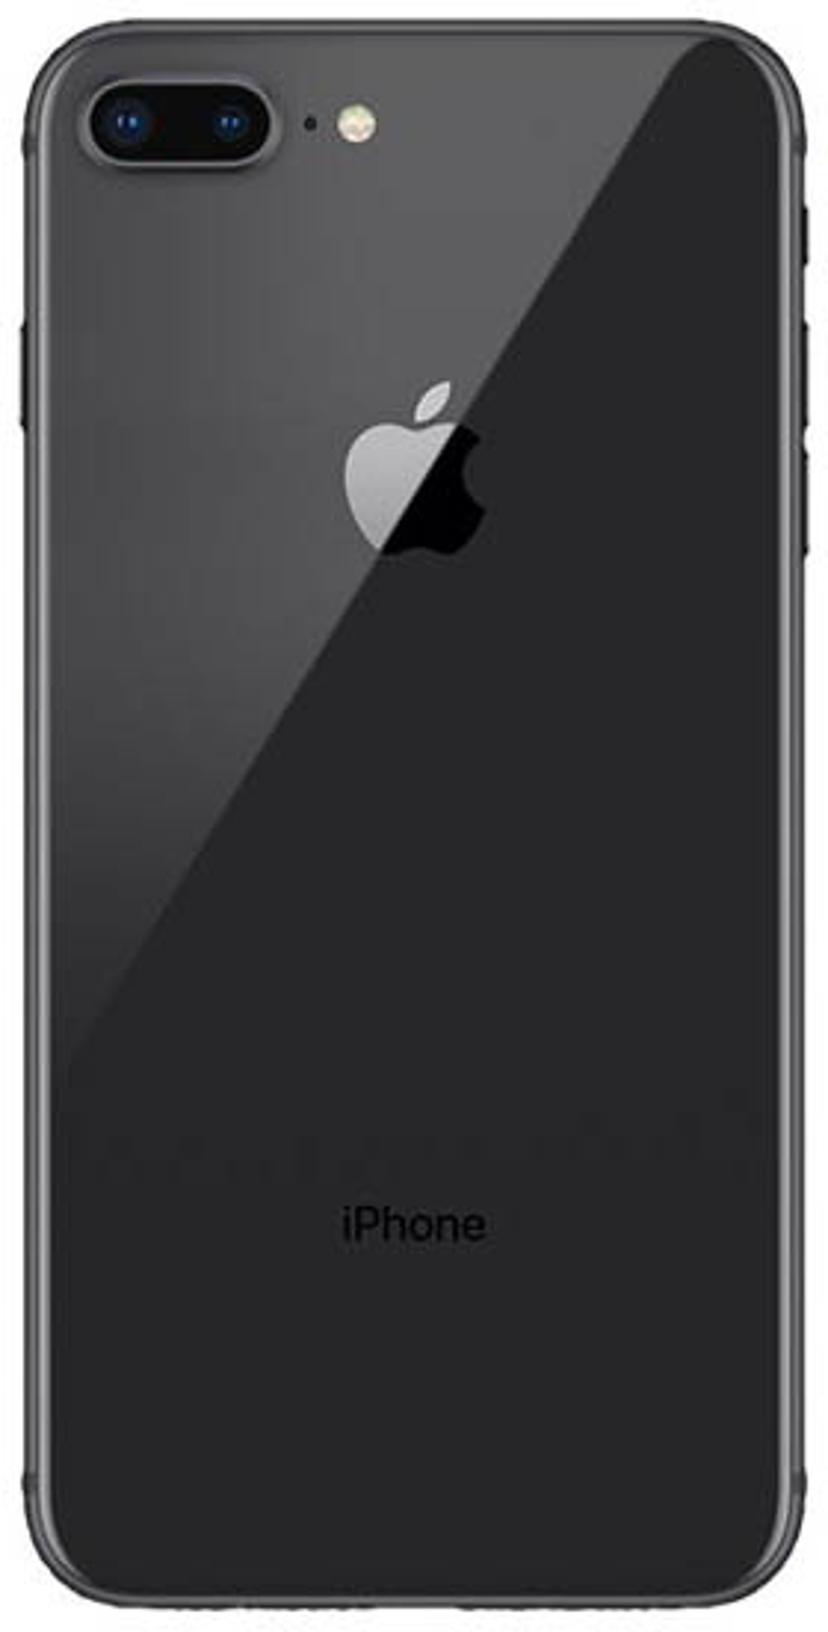 Apple iPhone 8 Plus 64GB Enkelt-SIM Space grey